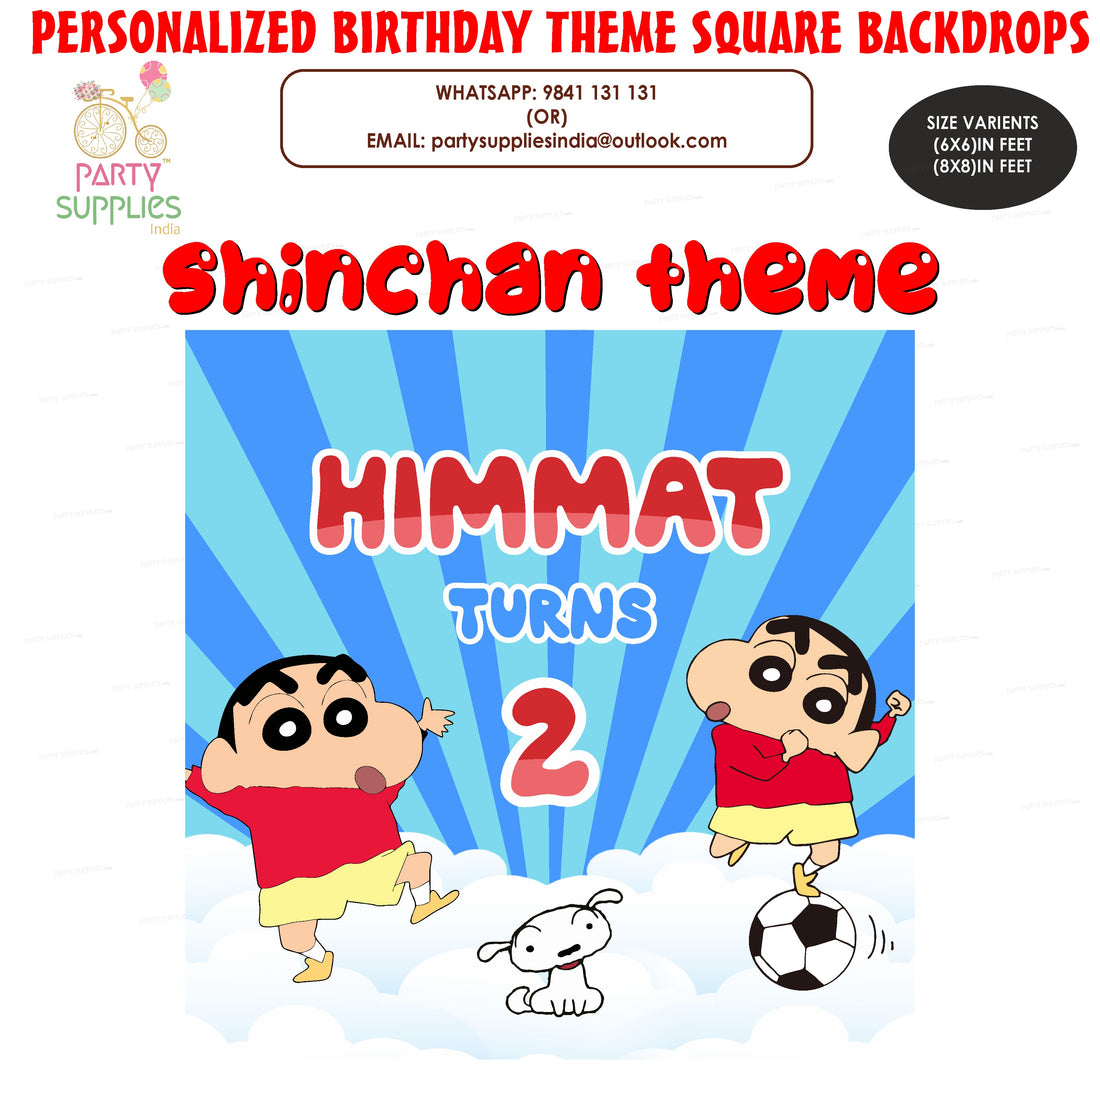 PSI Shinchan Theme Square Backdrop